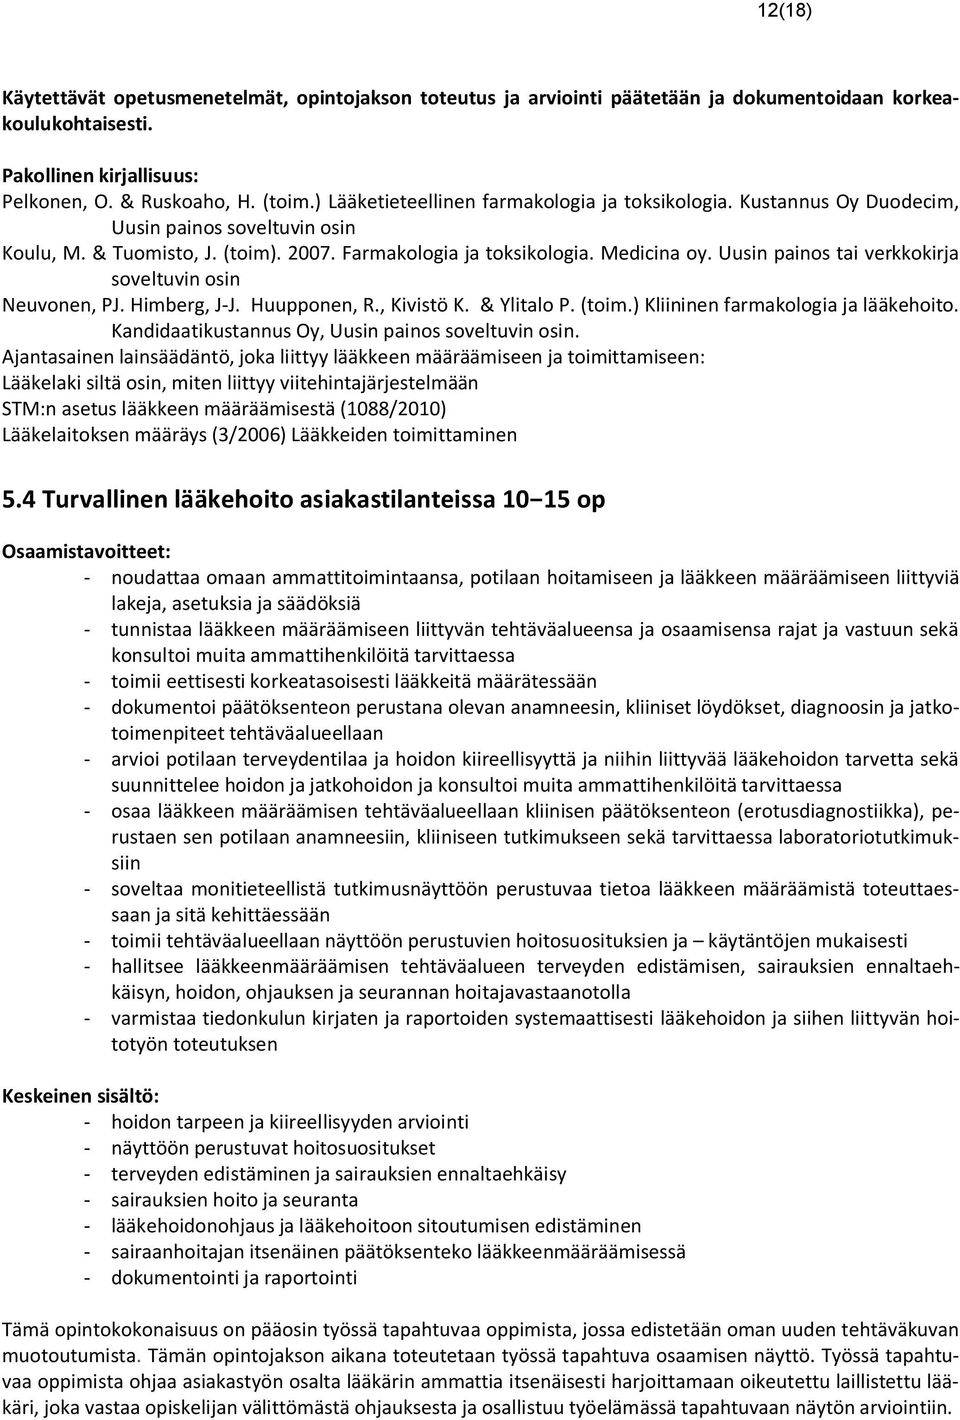 Uusin painos tai verkkokirja soveltuvin osin Neuvonen, PJ. Himberg, J-J. Huupponen, R., Kivistö K. & Ylitalo P. (toim.) Kliininen farmakologia ja lääkehoito.